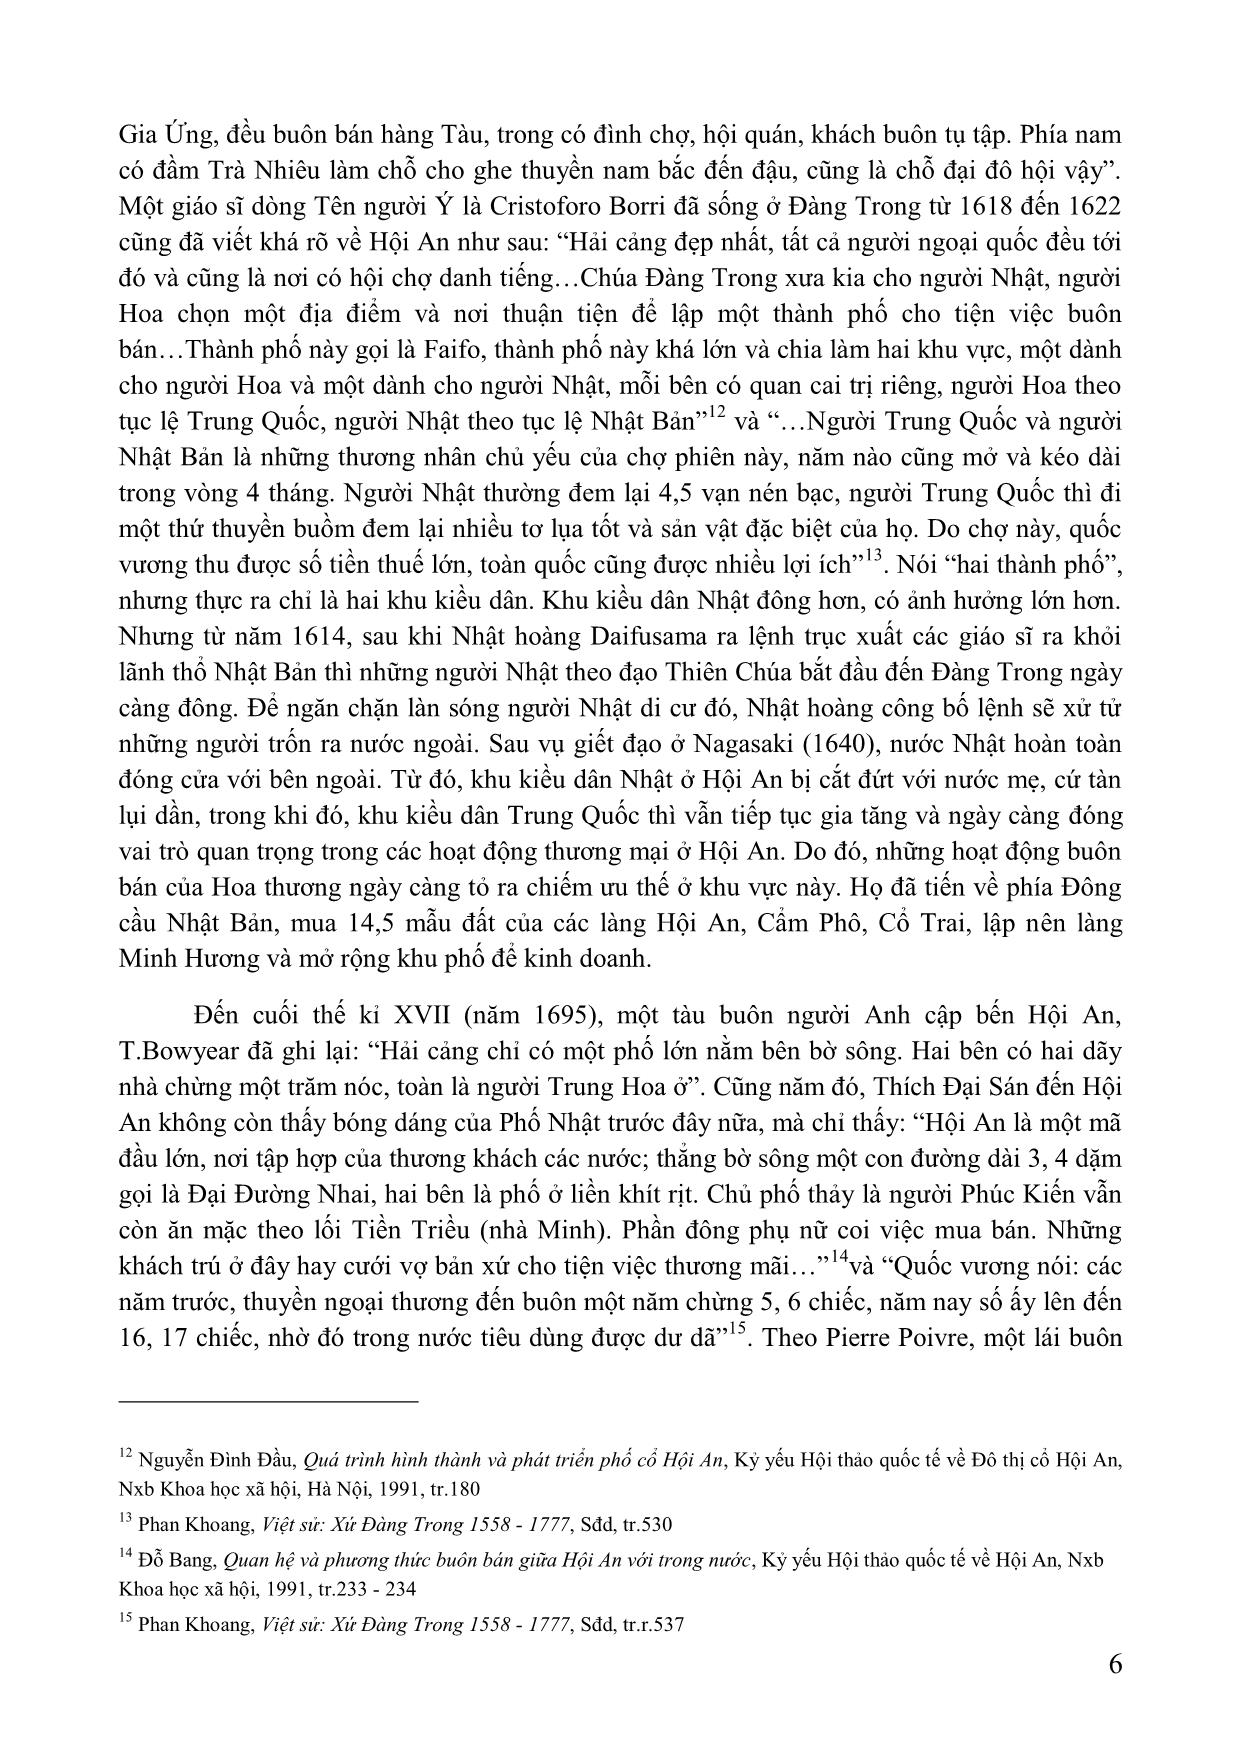 Vai trò của người hoa trong việc hình thành và phát triển các đô thị ở trung và Nam Bộ Việt Nam (thế kỉ XVII-XIX) trang 6